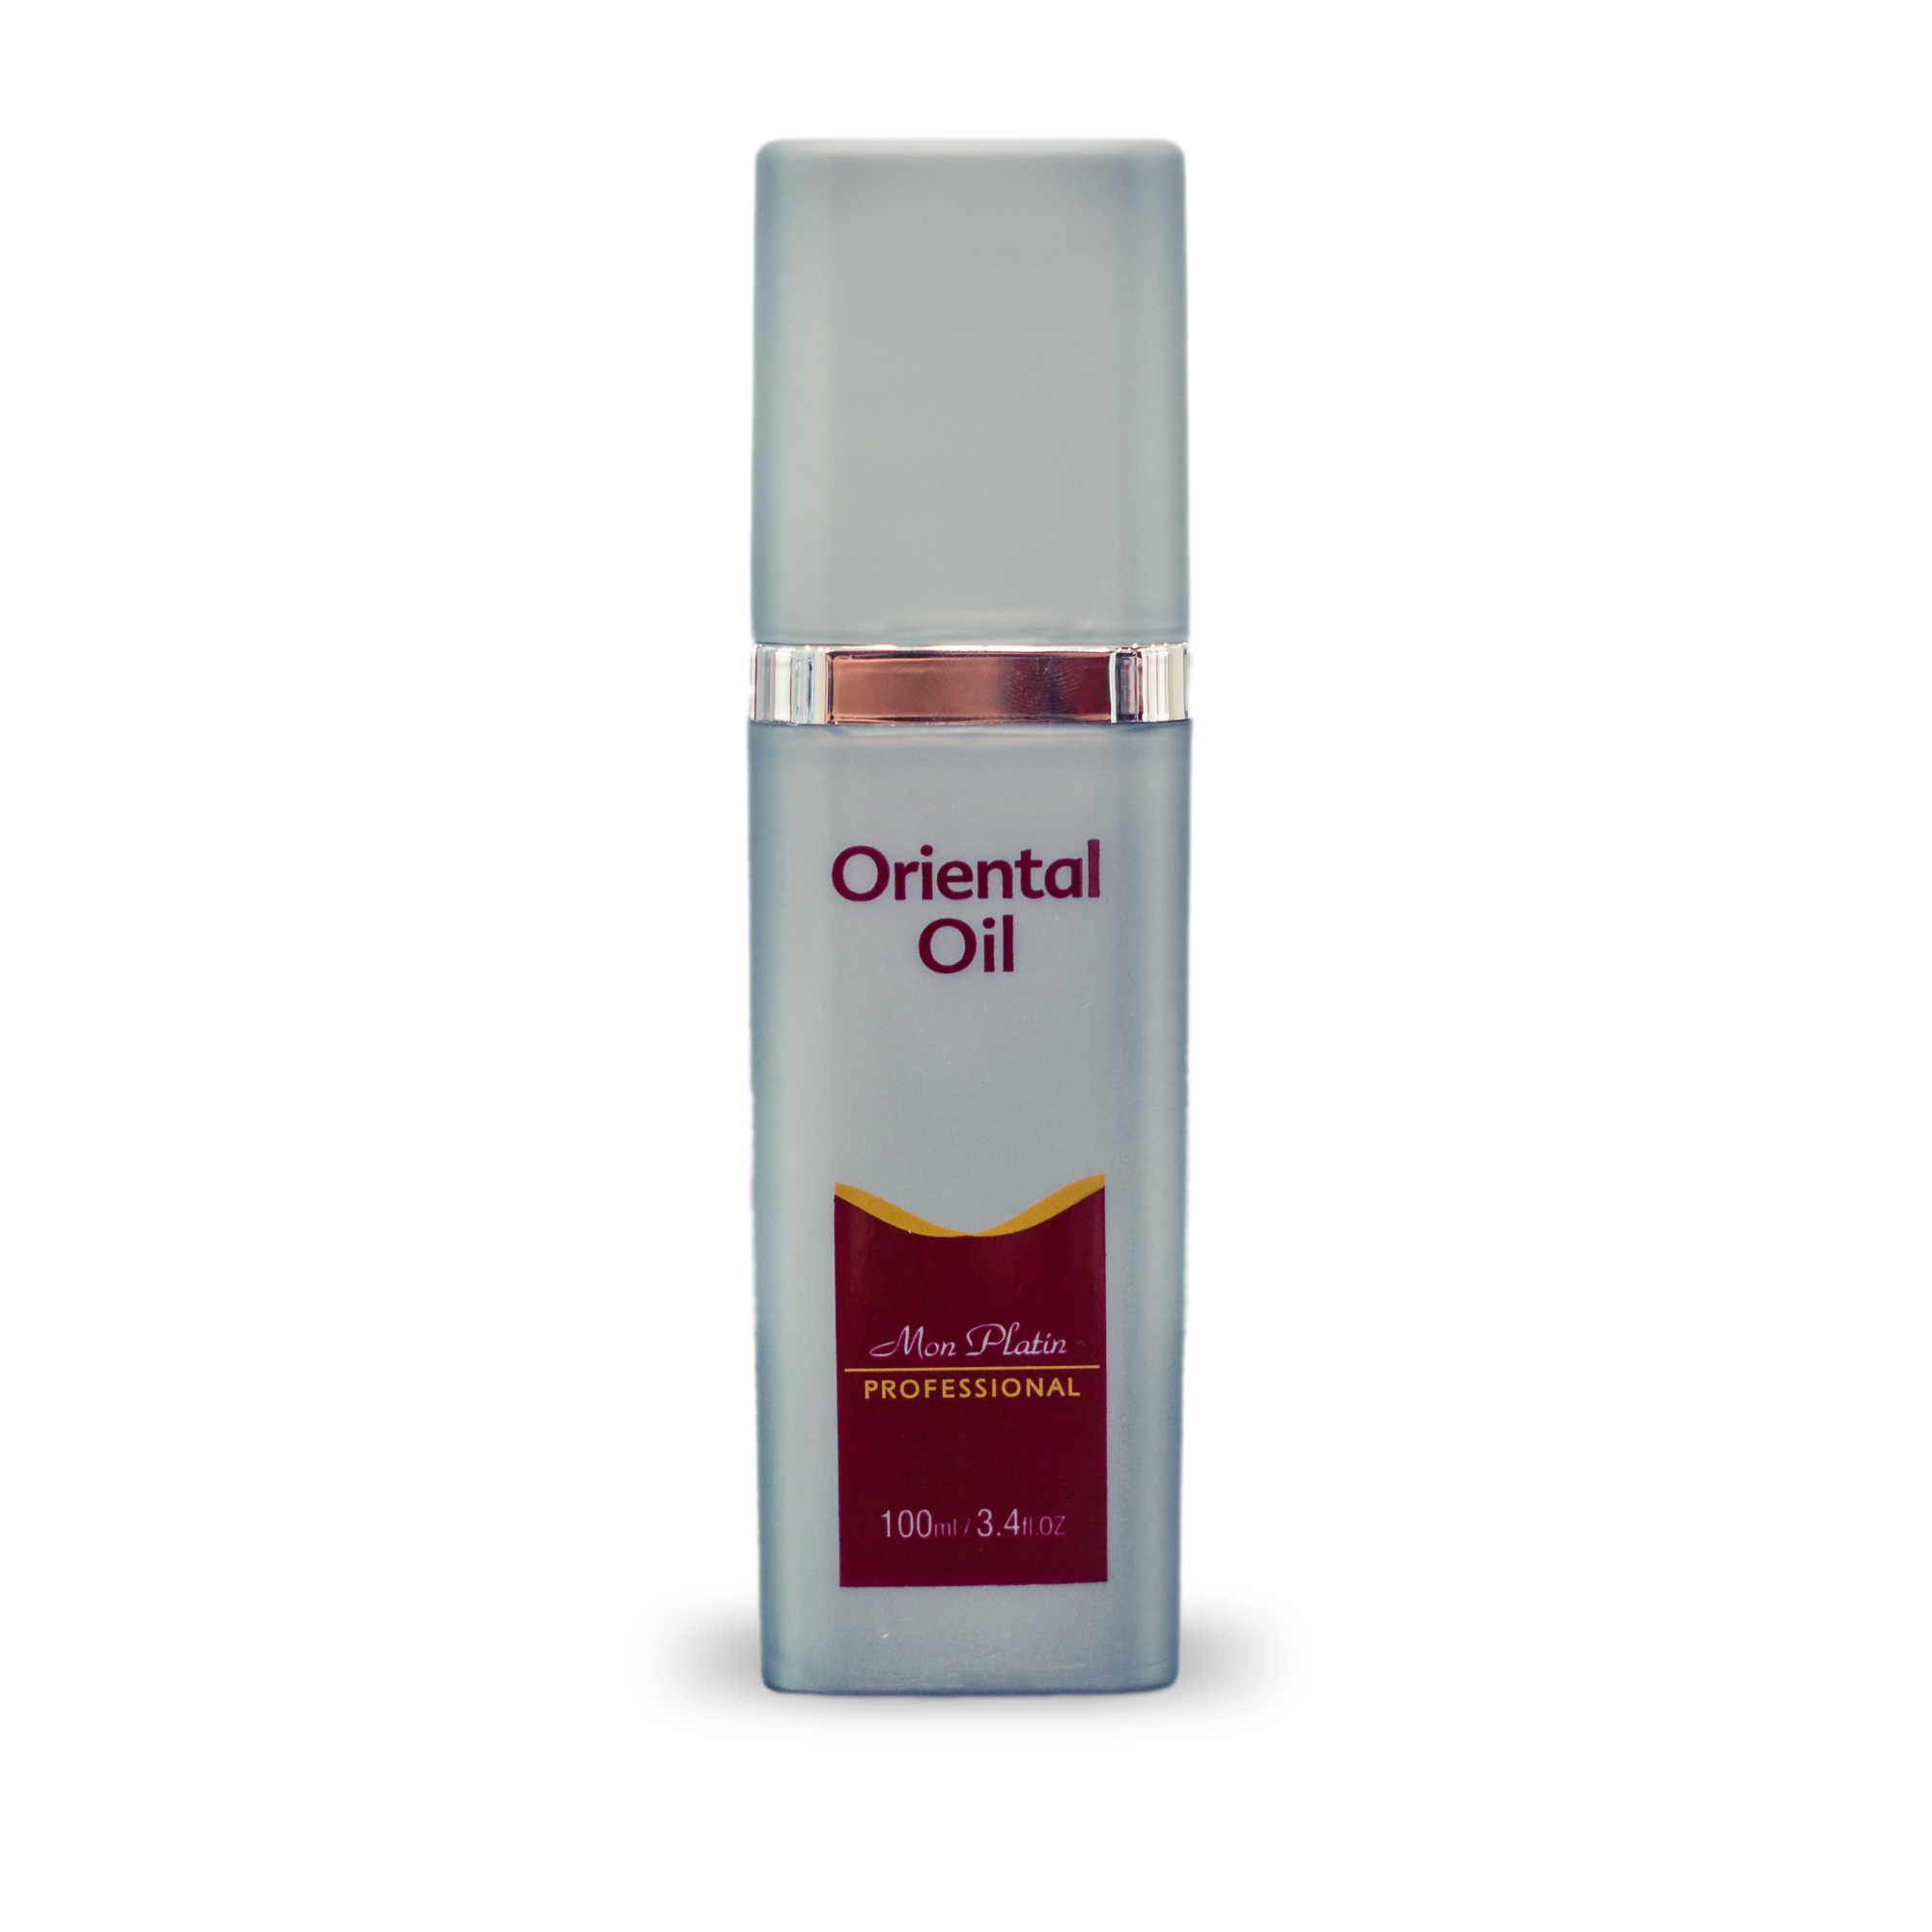 Восточное масло Mon Platin для питания и блеска волос Professional Oriental Oil, 100 мл лосьон curl c для завивки окрашенных волос